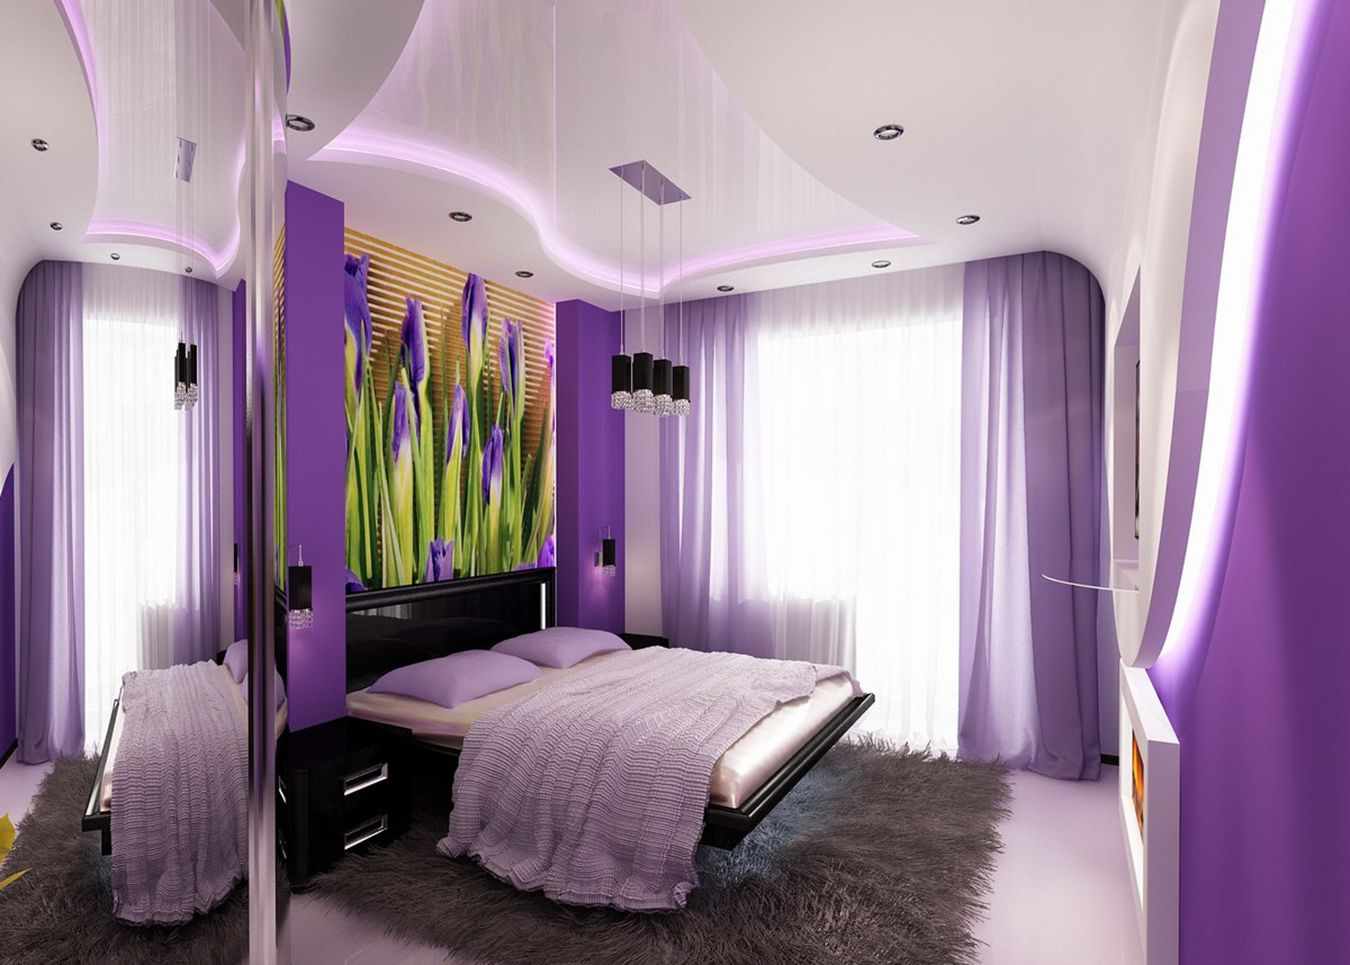 Un esempio di uno stile luminoso da camera da letto